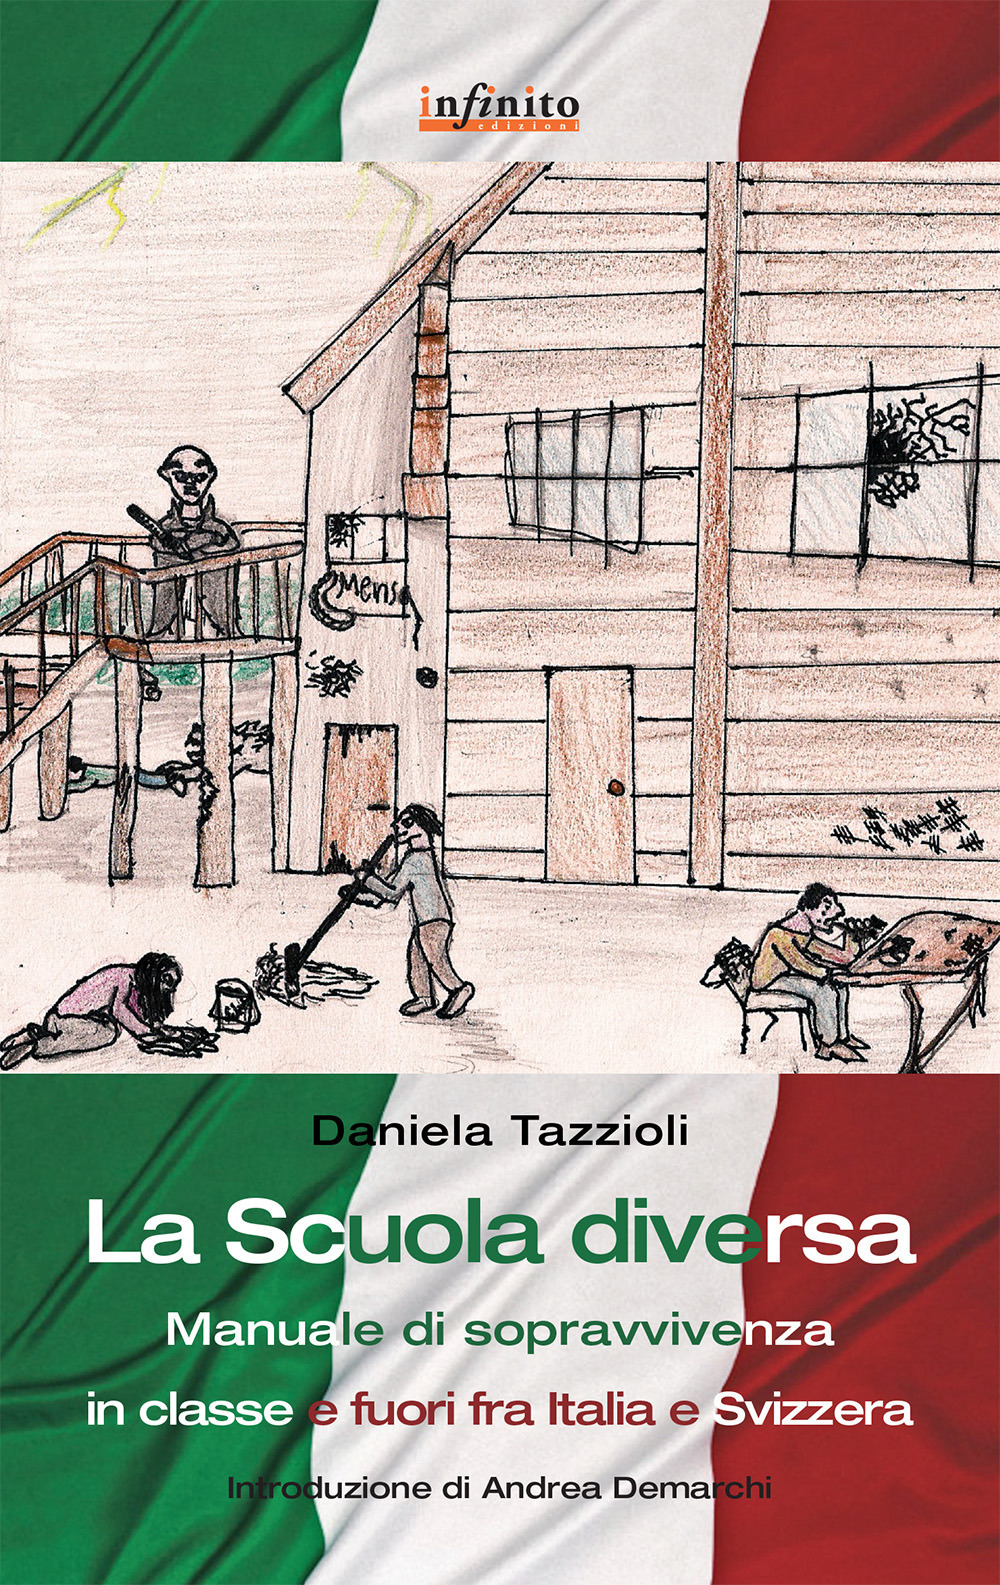 La scuola diversa. Manuale di sopravvivenza (in classe e fuori) fra Italia e Svizzera